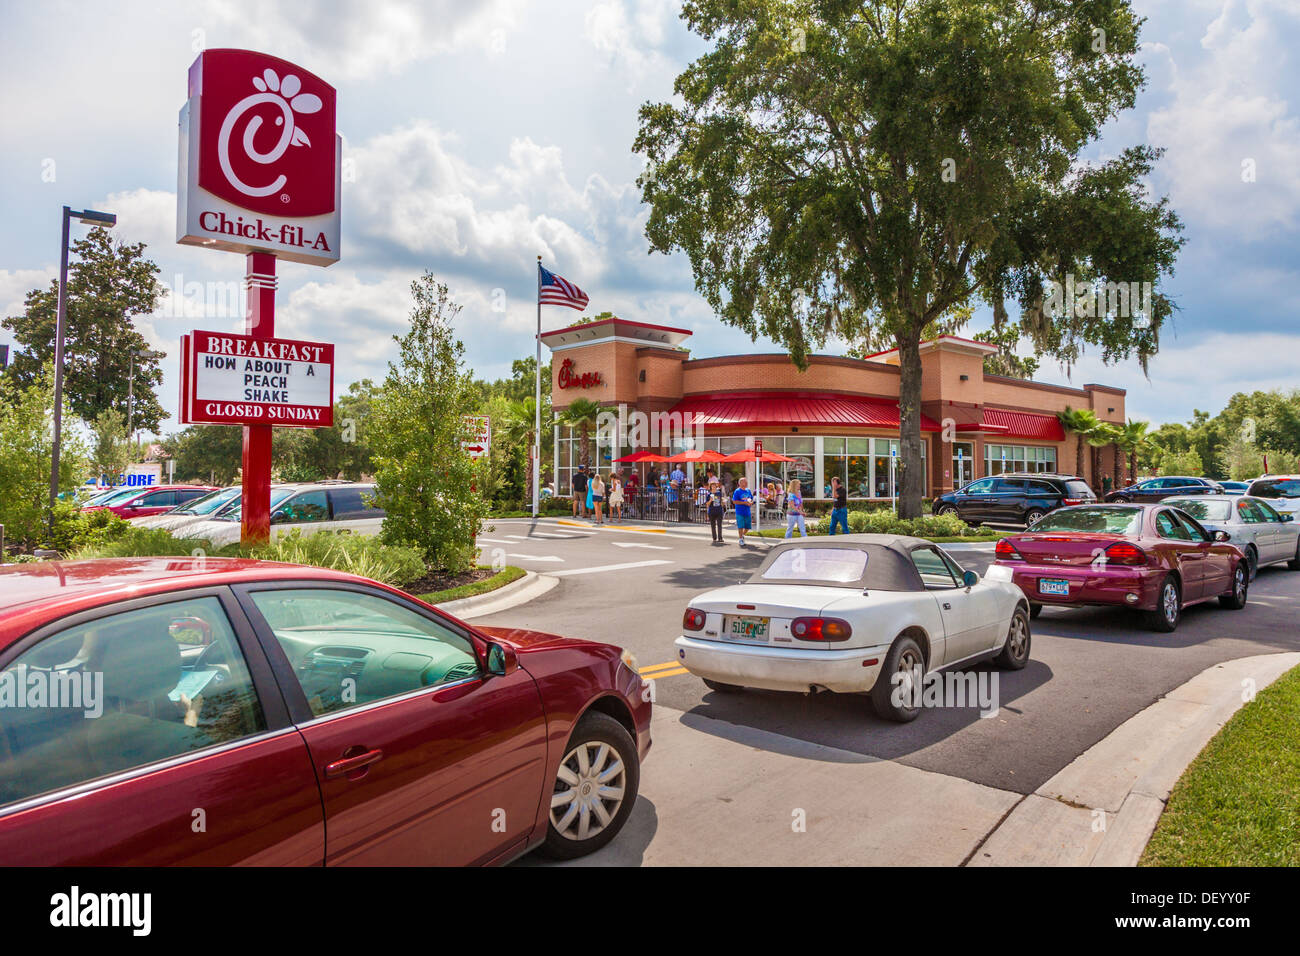 Los coches se alinearon a la carretera en el Chick-fil-un restaurante de comida rápida en Ocala, Florida en apoyo de los valores cristianos. Foto de stock